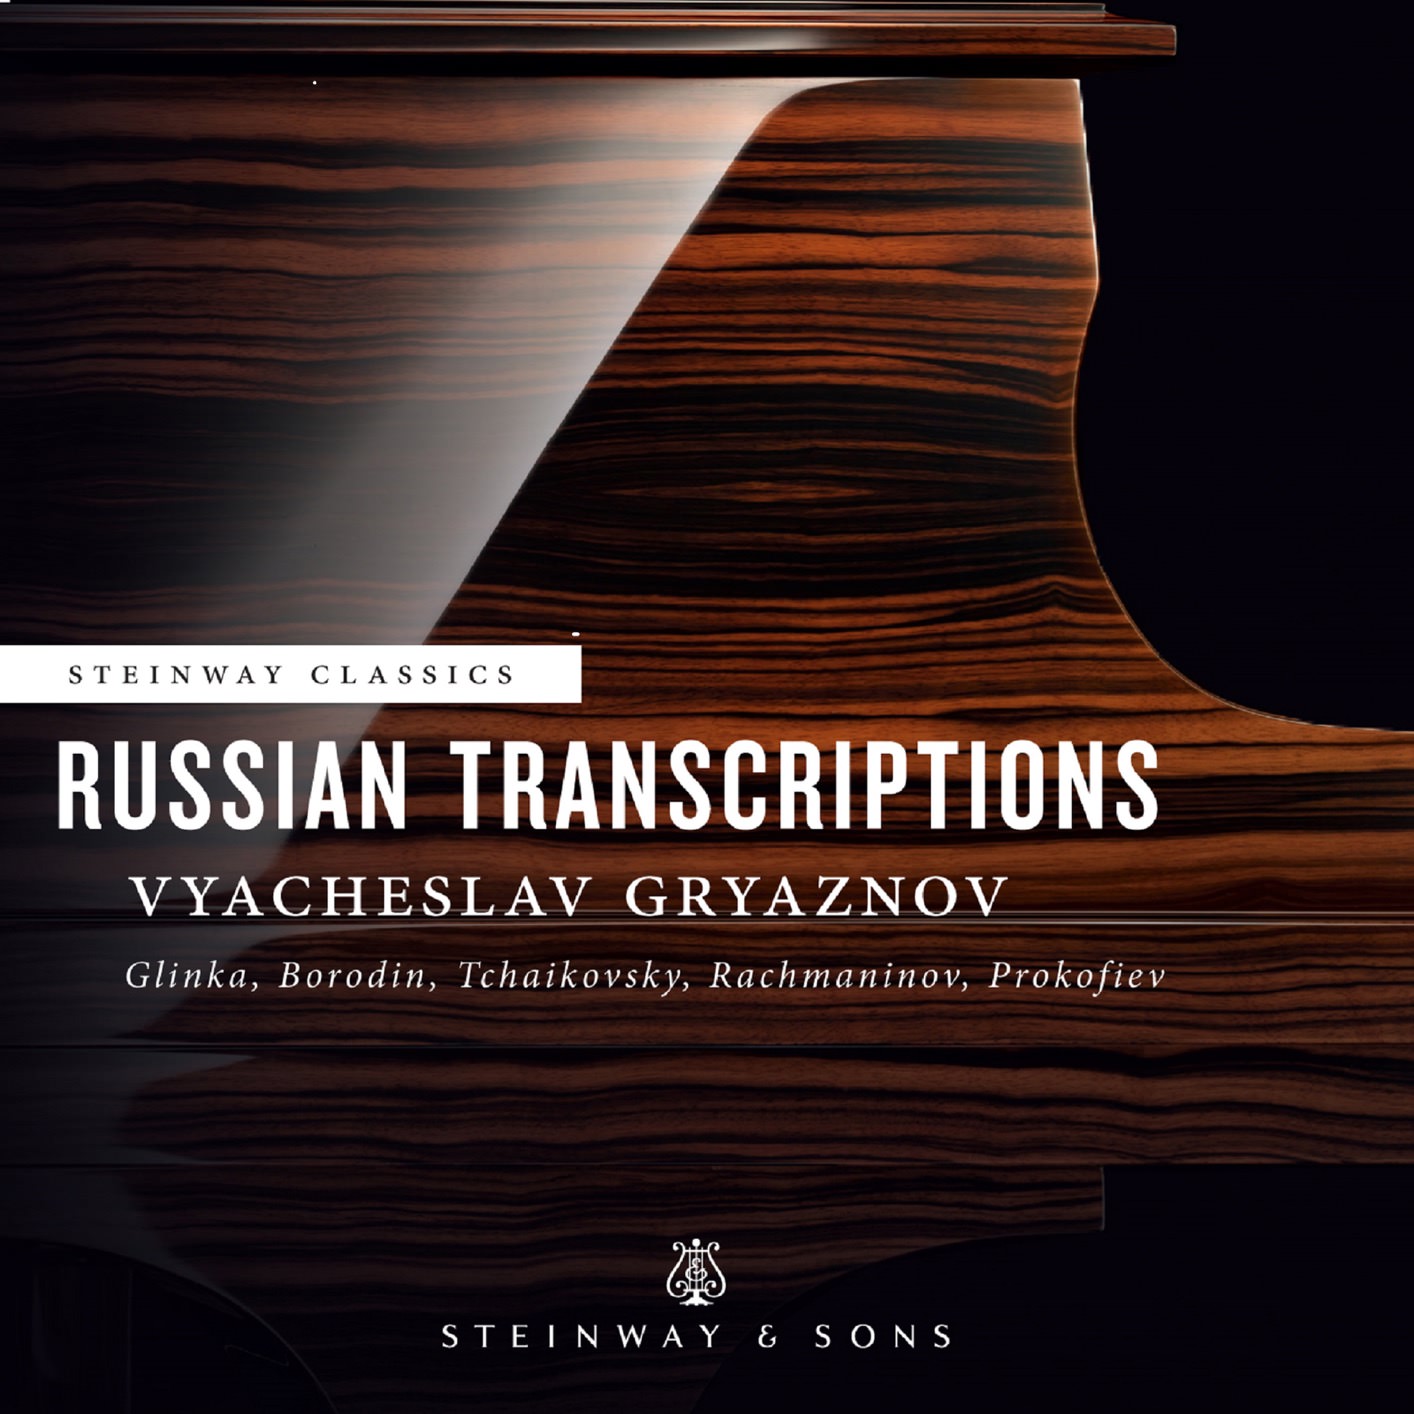 Vyacheslav Gryaznov – Russian Transcriptions (2018) [FLAC 24bit/192kHz]